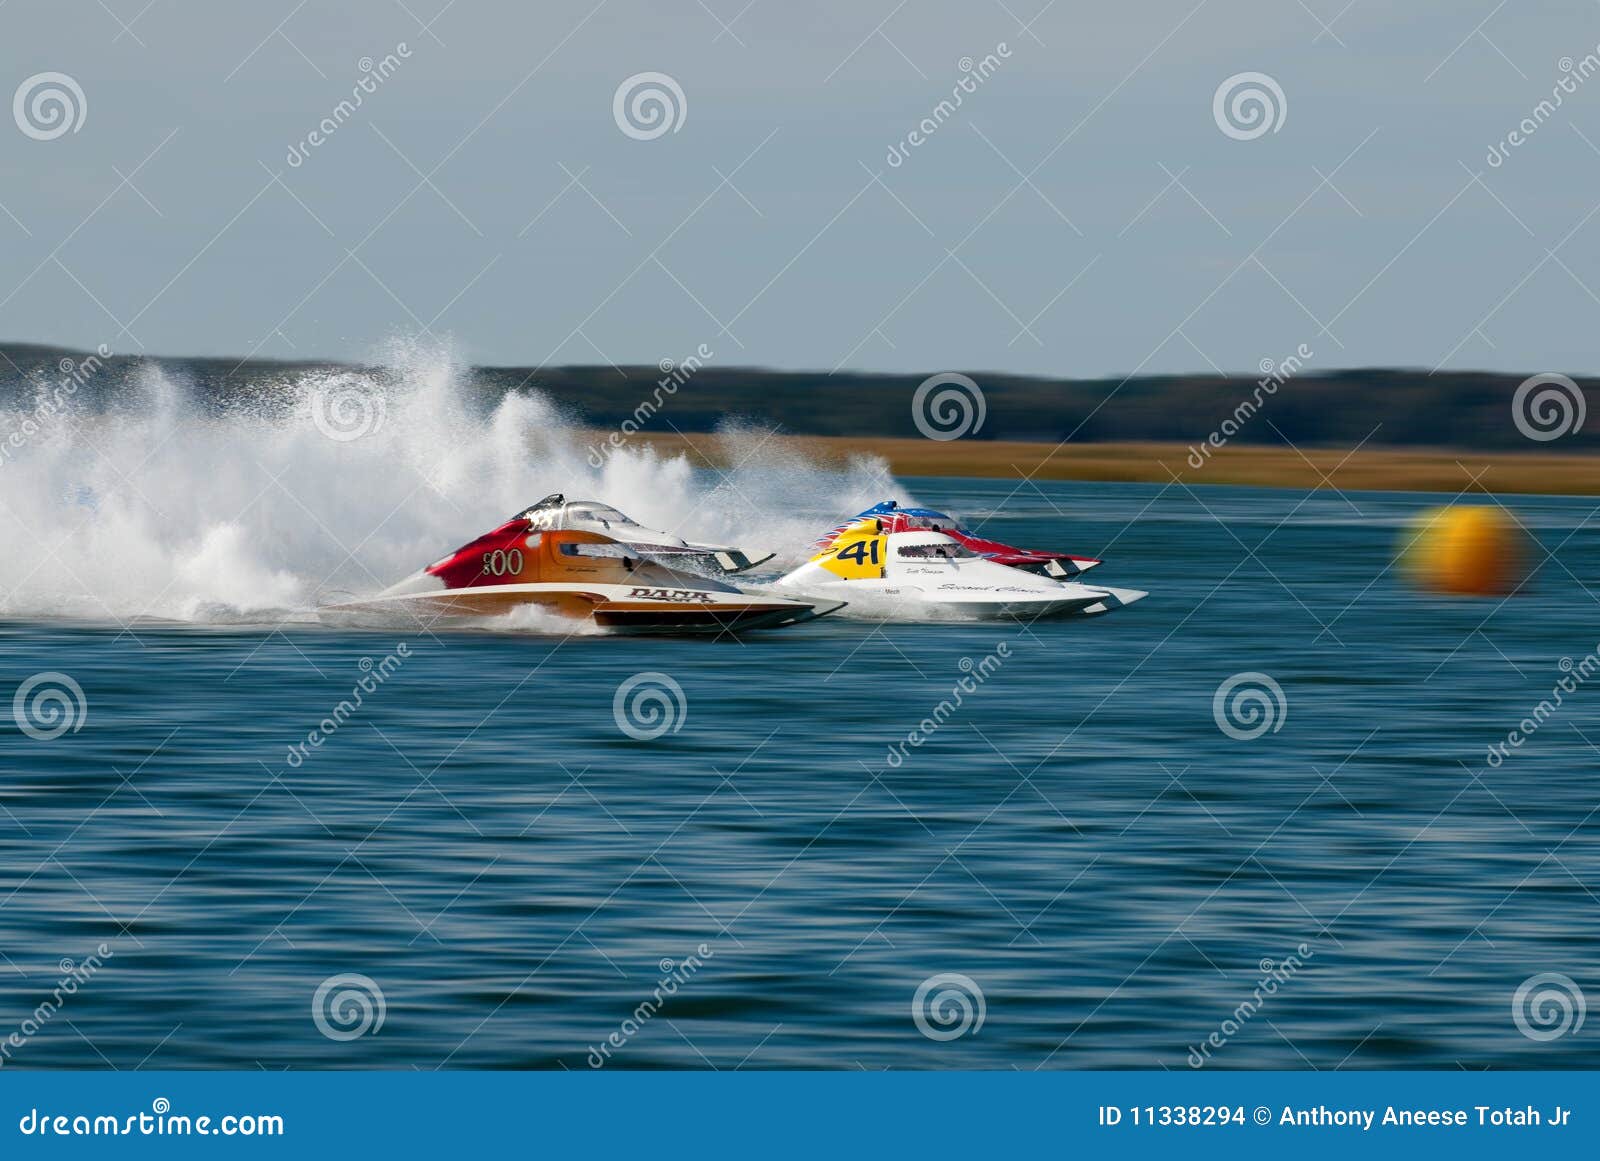 Racespeedboat. Krönar fartygfartyg 2009 för jersey för koppregulatorn mest hydrofest wildwood för hastighet ny race s